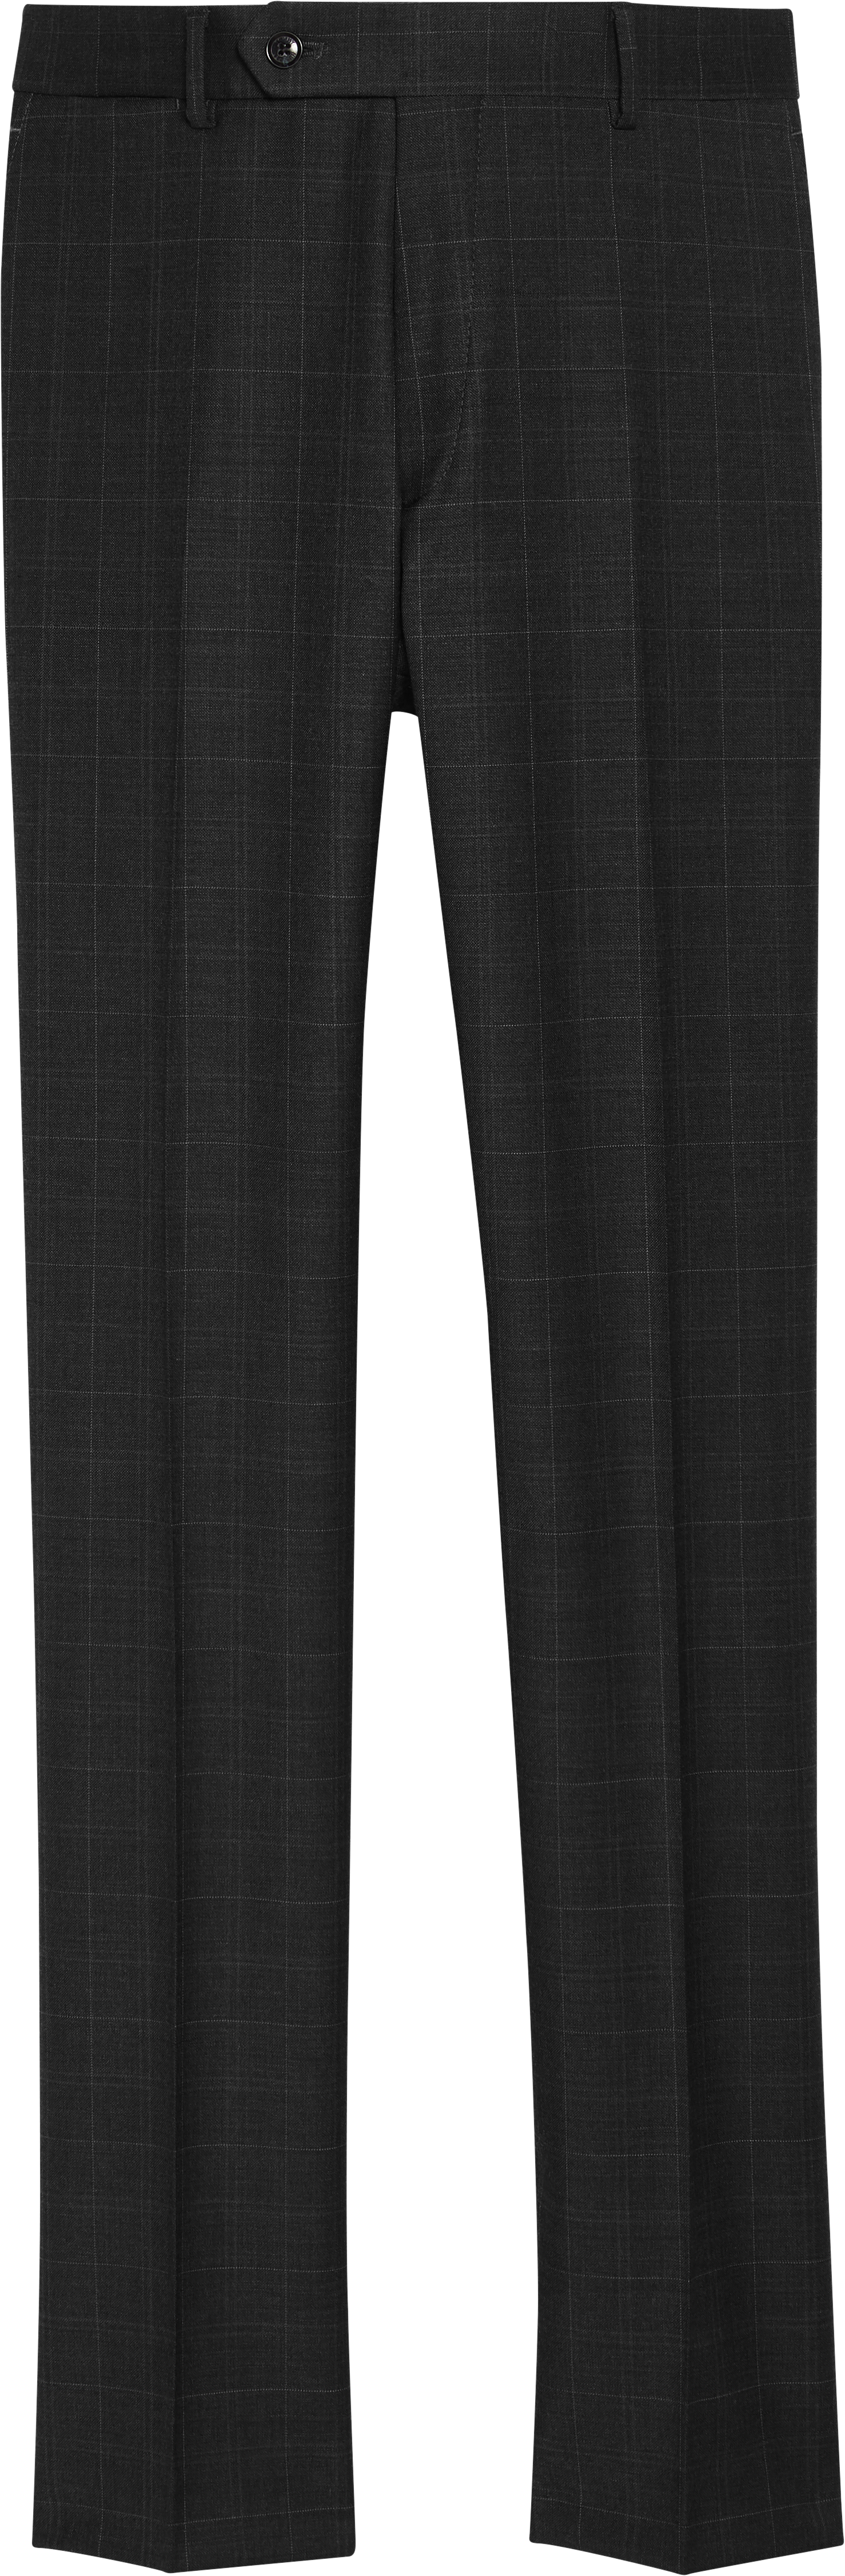 Pants| Hilfiger Suit Wearhouse Fit Tommy Separate Pants | Men\'s Modern